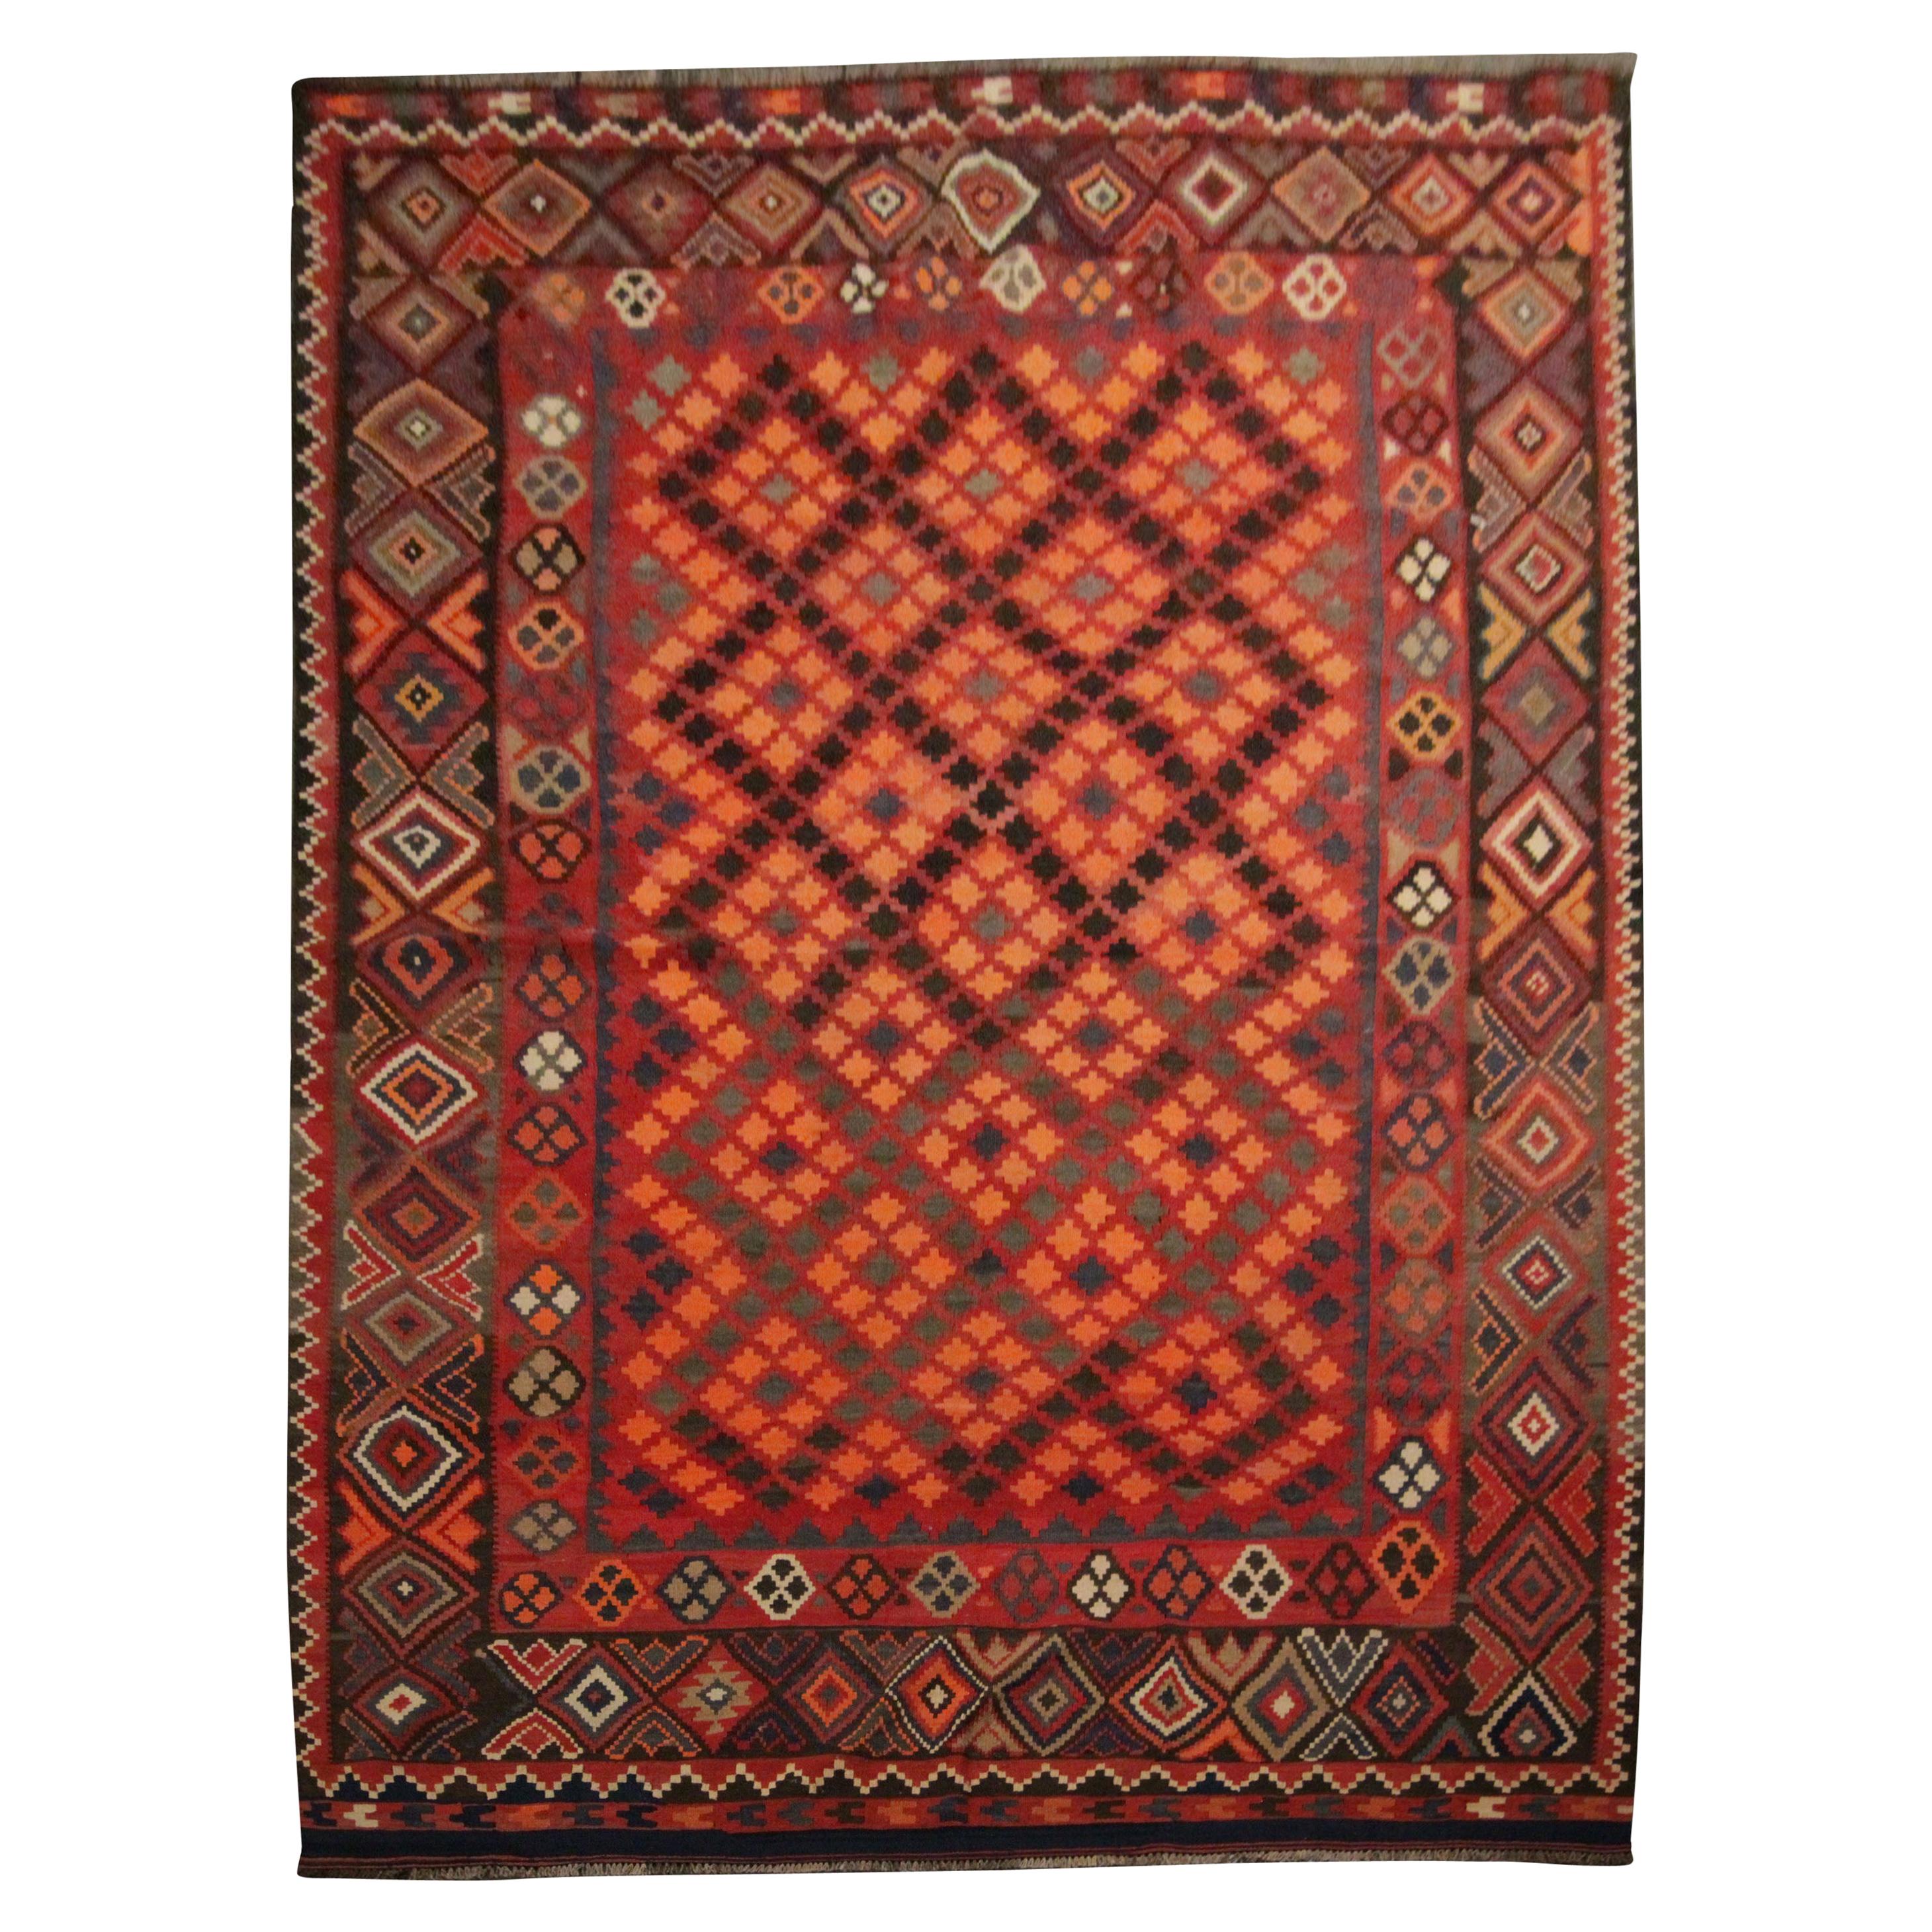 Roter Teppich aus Wolle und Kelim, handgefertigter traditioneller kaukasischer Teppich